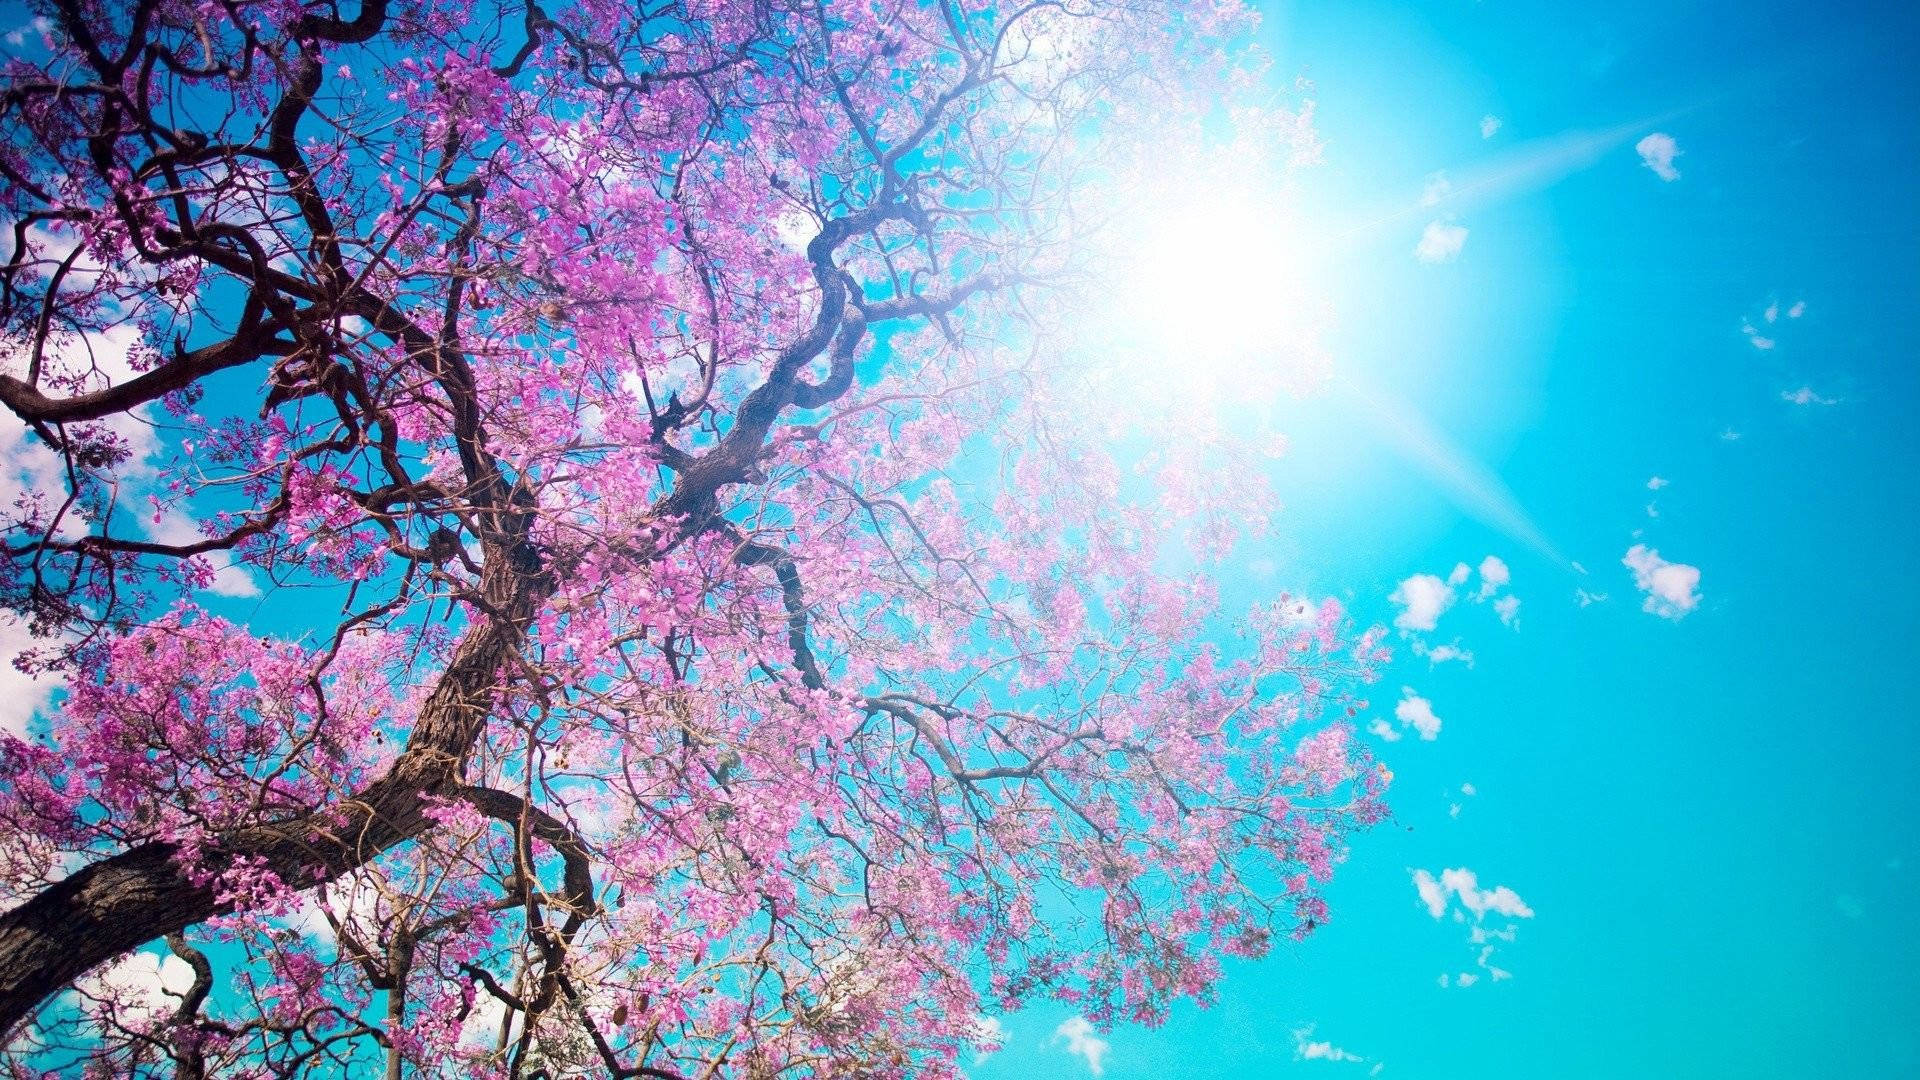 Qhd Cherry Blossom Tree Wallpaper